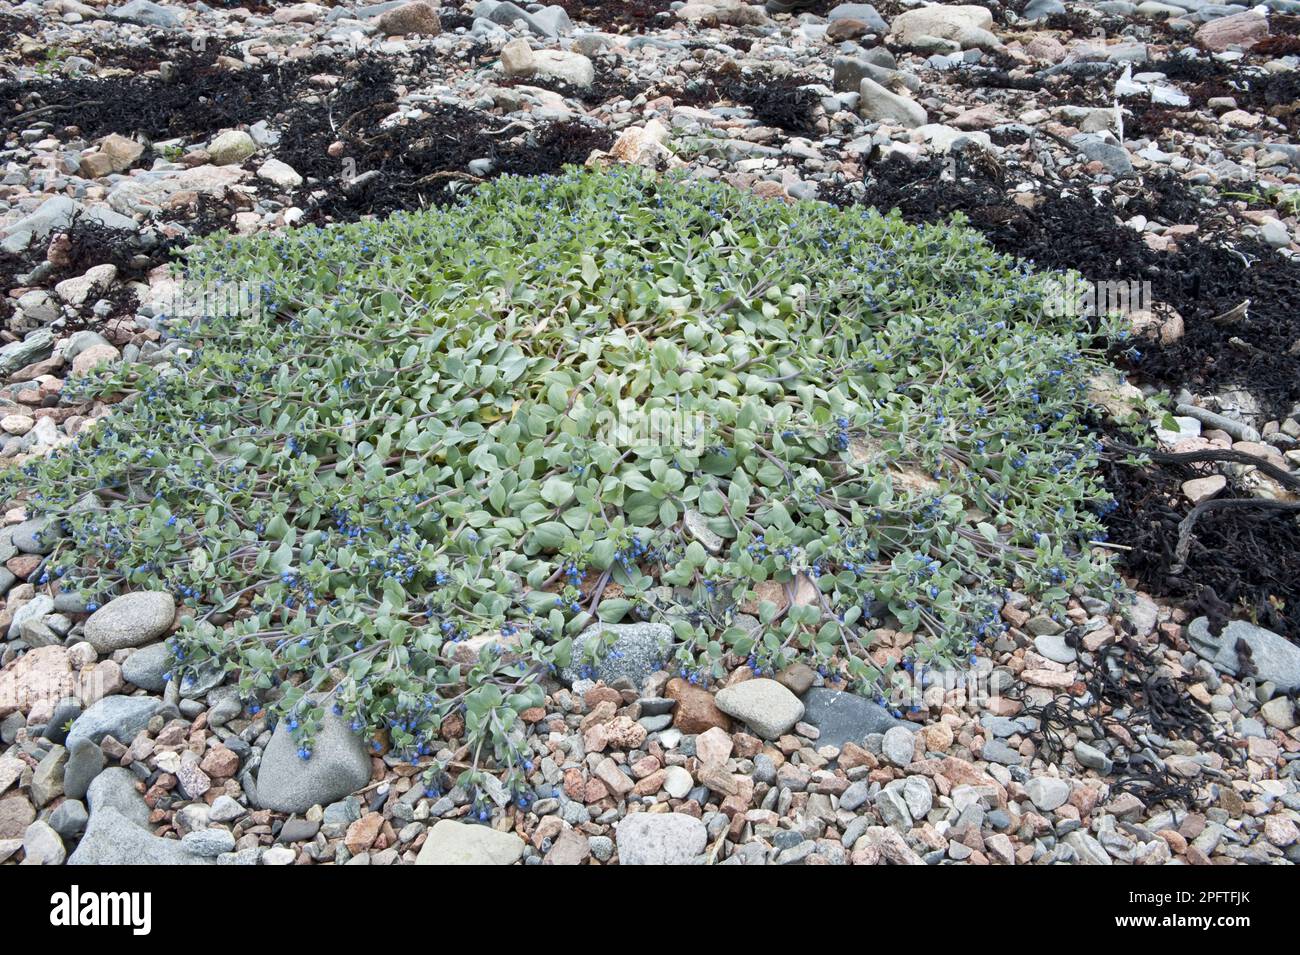 Blühende Austernblätter (Mertensia maritima), die an Kieselstrand wachsen, Unrafirth, Festland, Shetland-Inseln, Schottland, Vereinigtes Königreich Stockfoto